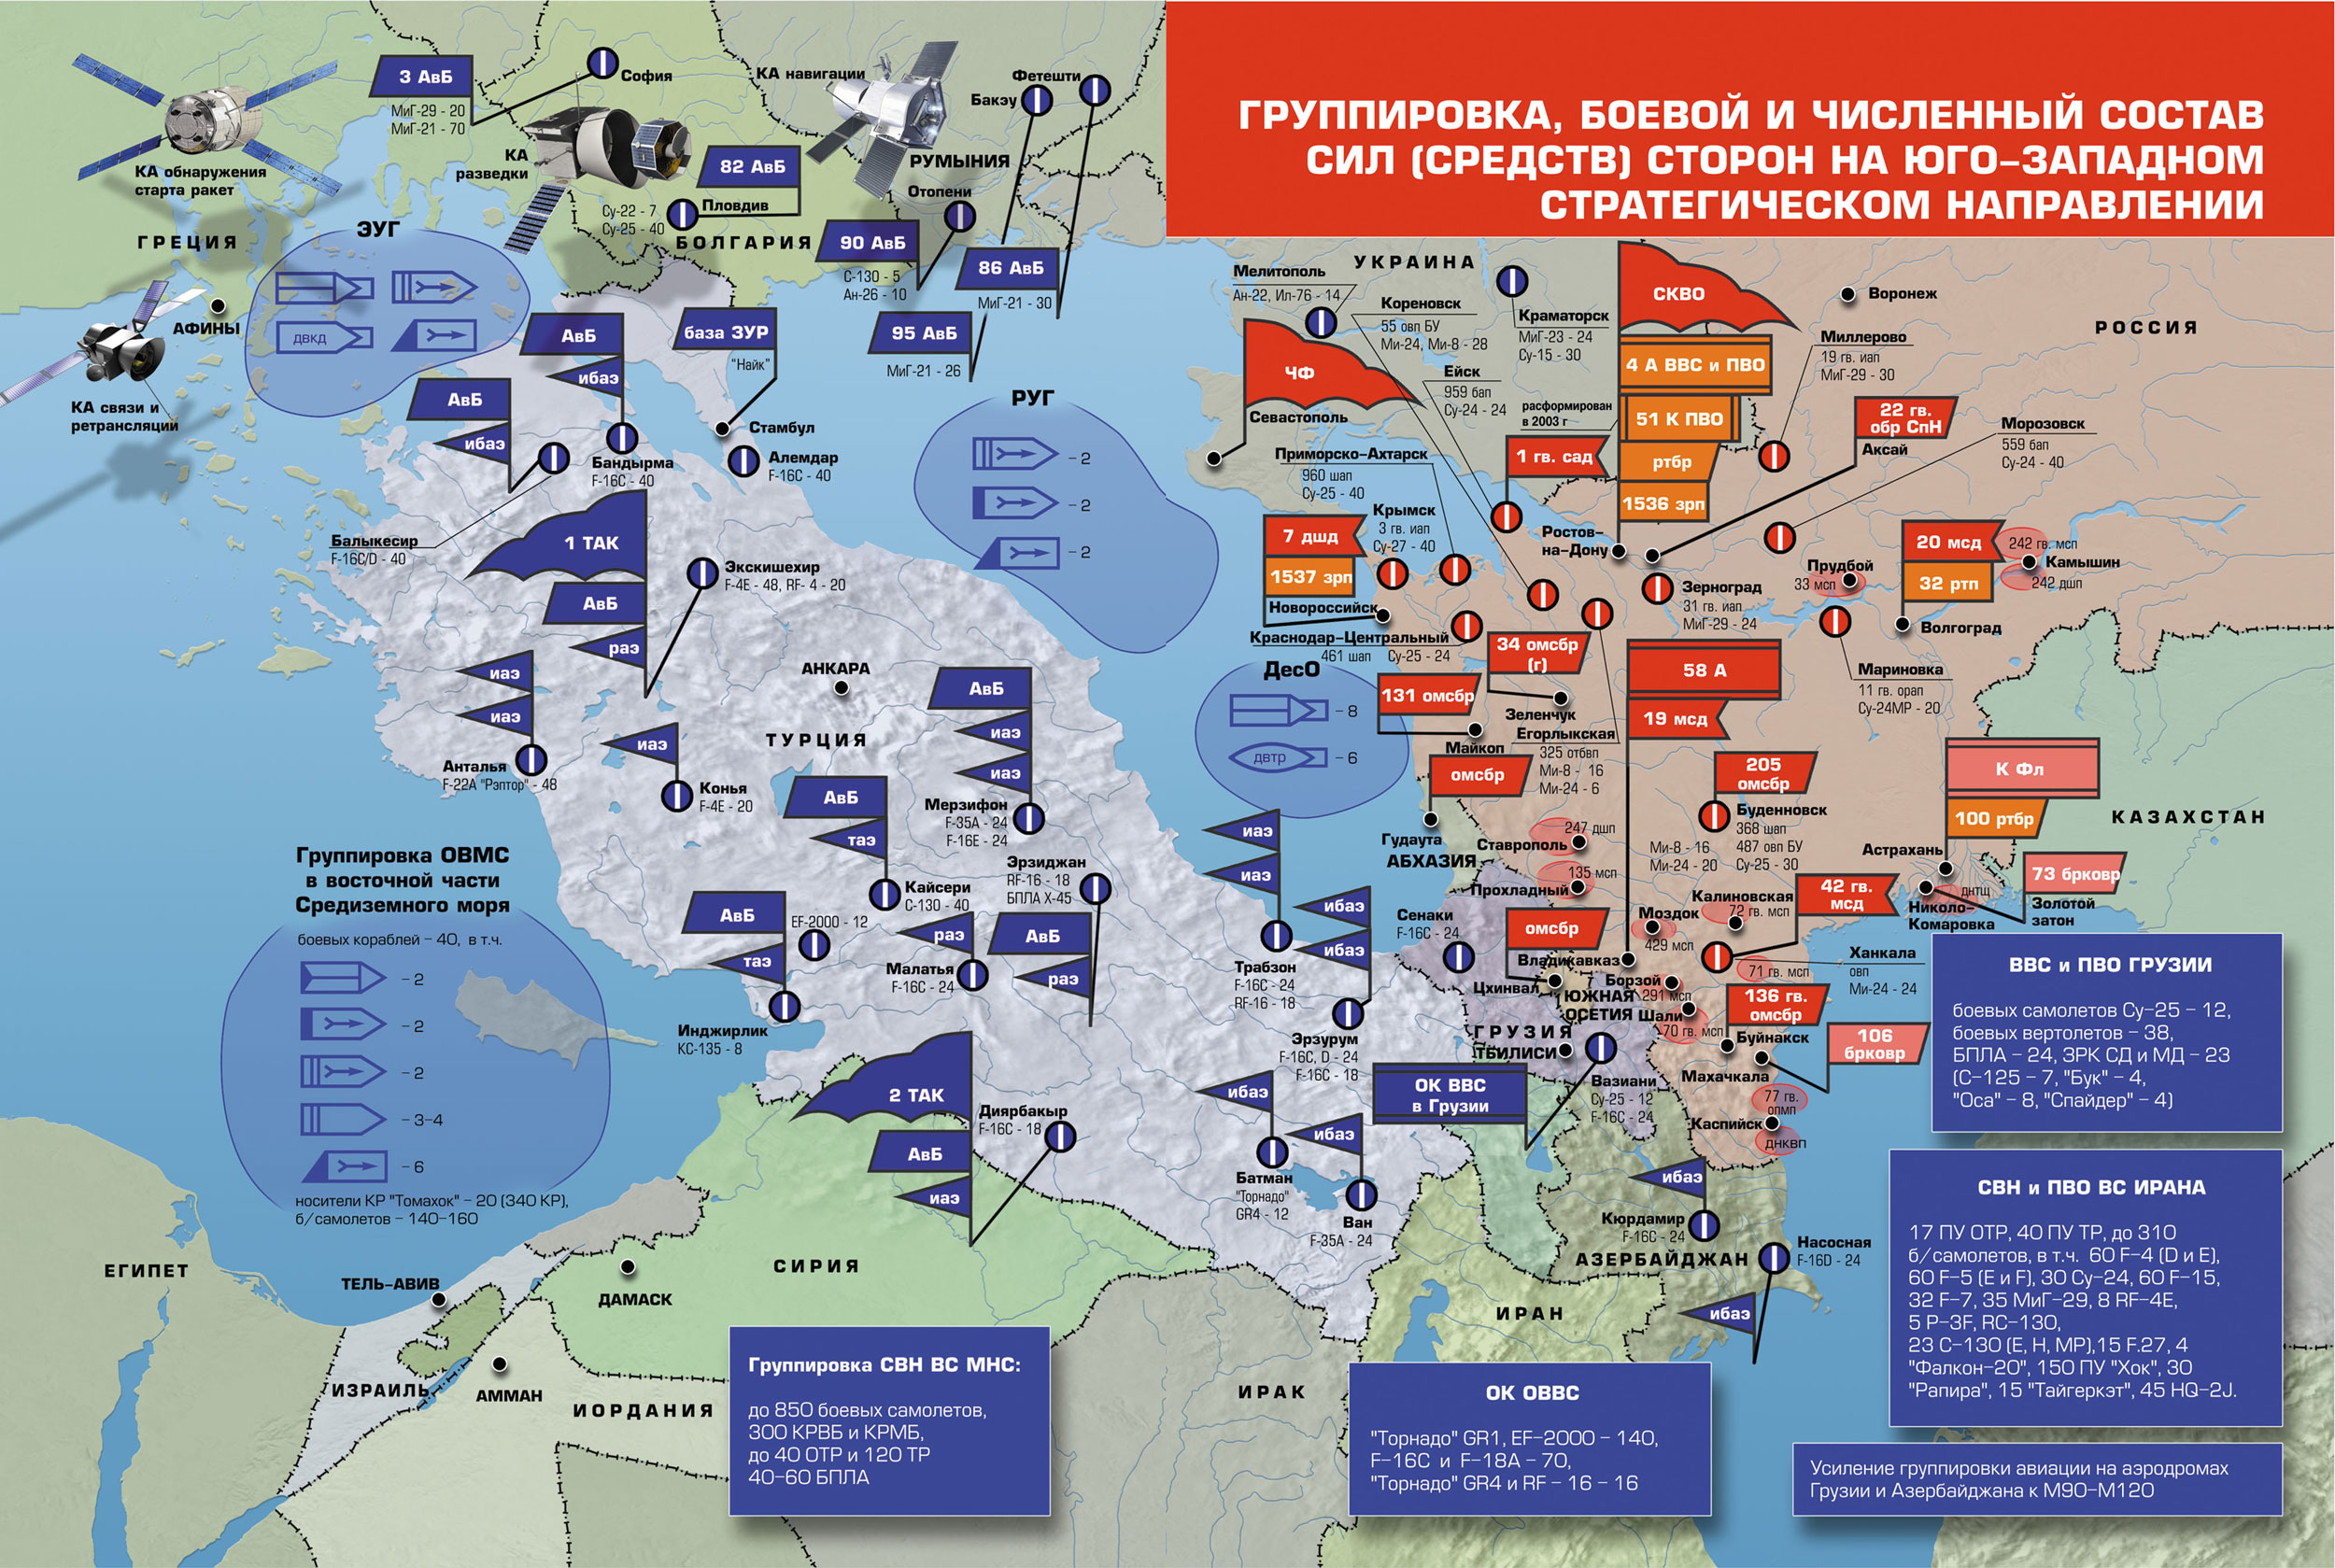 Сценарий военной операции. ПВО НАТО В Европе на карте. Военные базы НАТО В Европе на карте. Карта размещения войск НАТО В Европе. Группировка войск НАТО на карте.